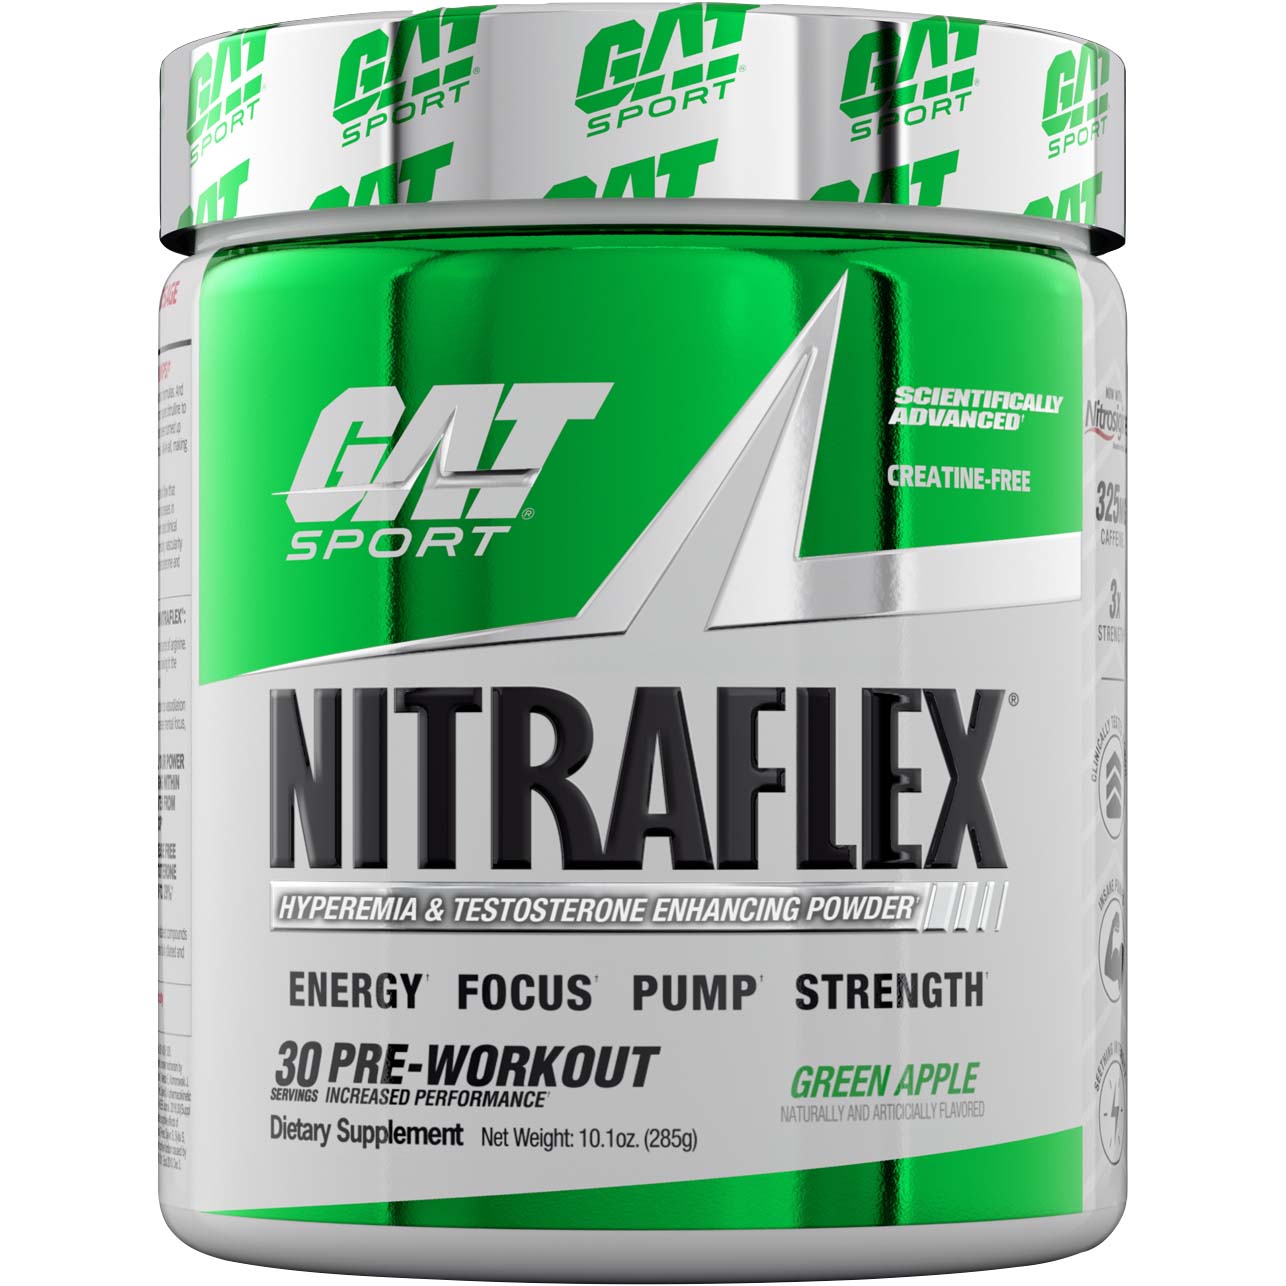 Gat Sport Nitraflex Testosterone Boosting Powder, Green Apple, 30